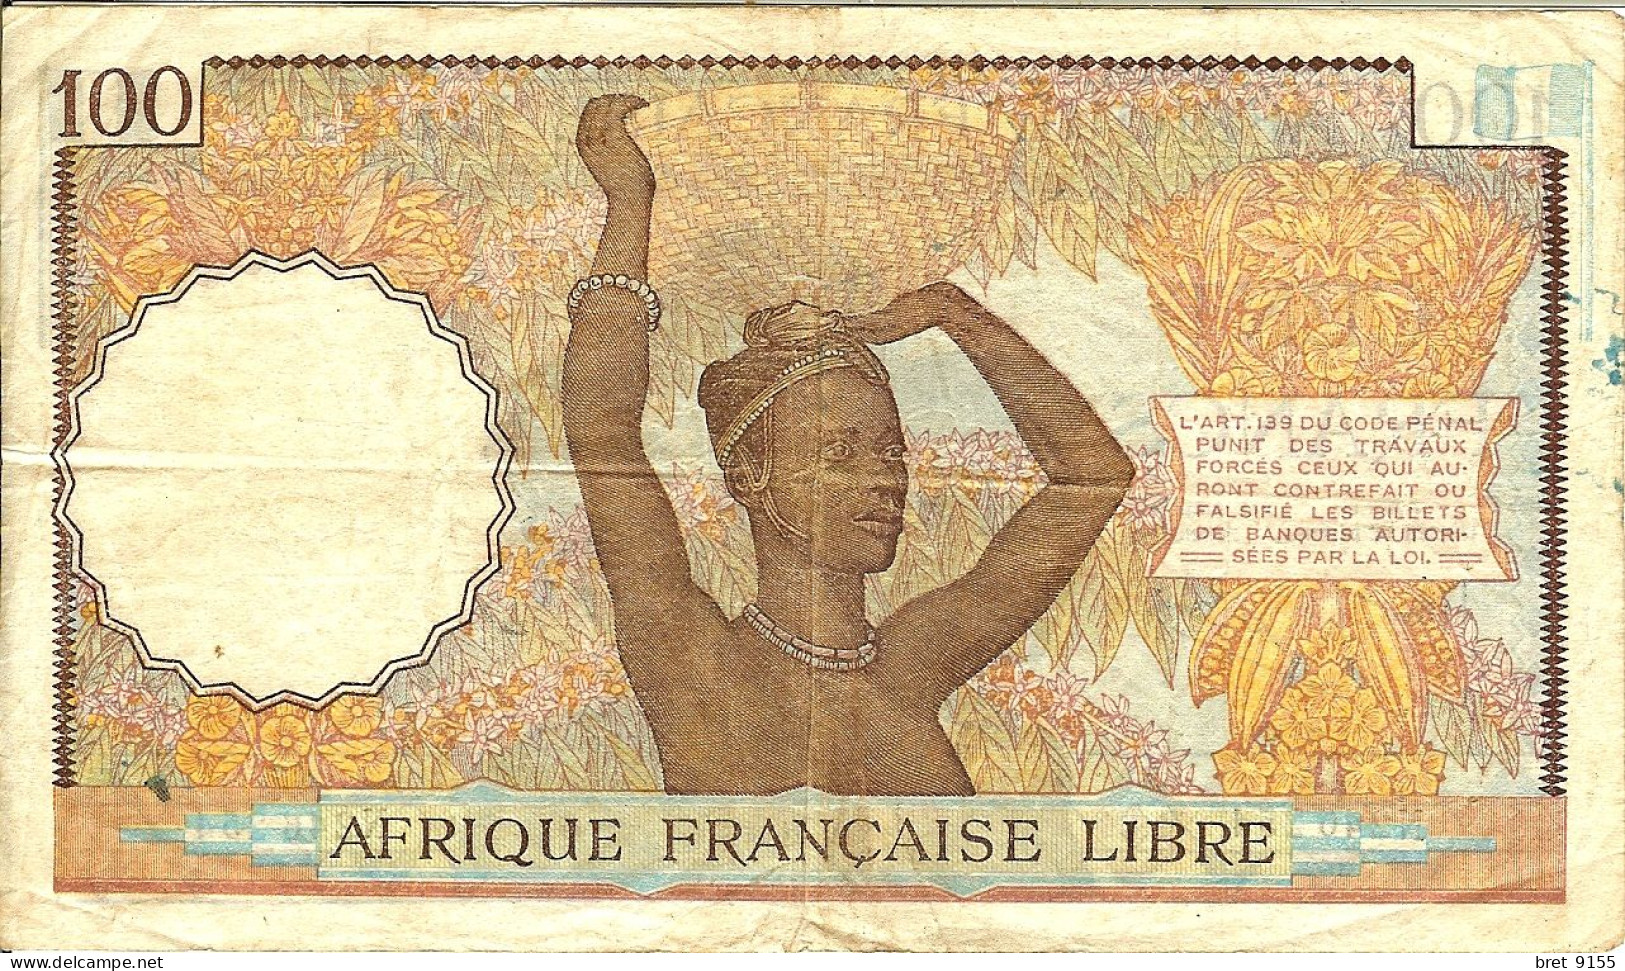 BILLET DE BANQUE AFRIQUE FRANCAISE LIBRE CONGO 100 FRANCS 1941 SERIE N246254 - Afrique Du Sud